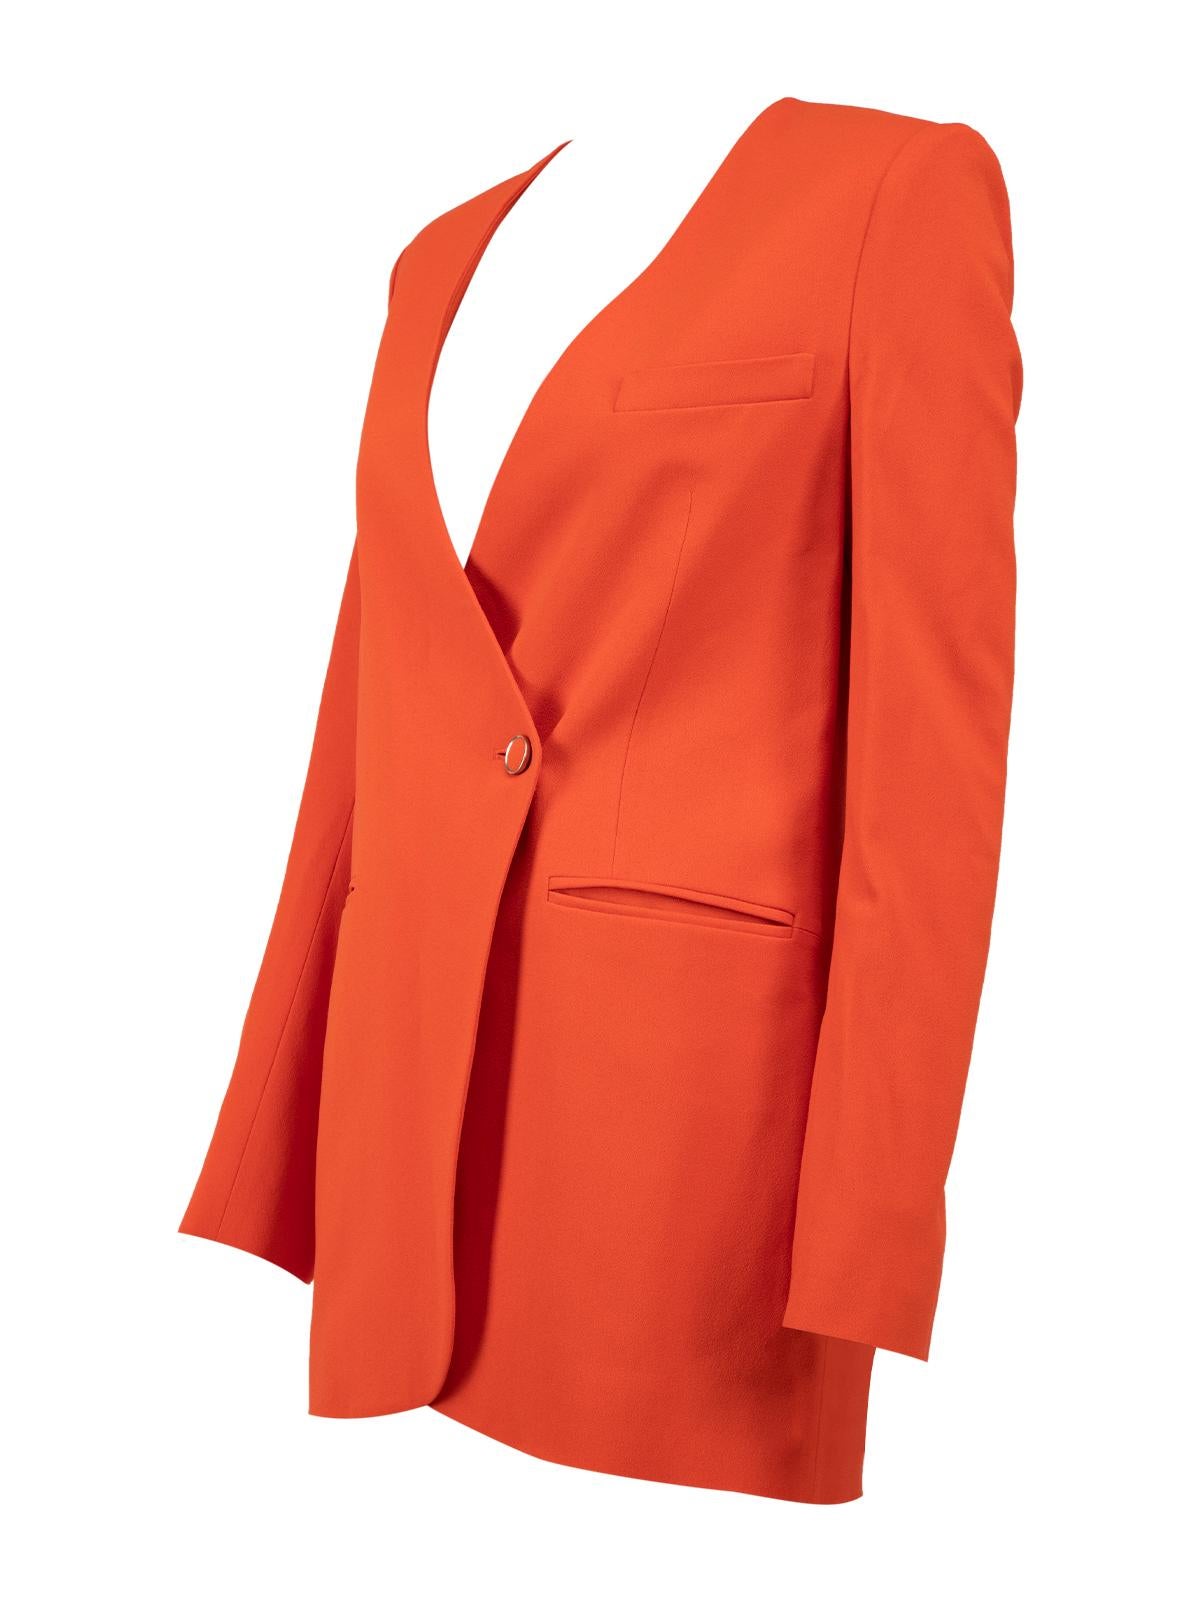 Pre-Loved Matthew Williamson Women's Orange Fitted Blazer Jacket 1